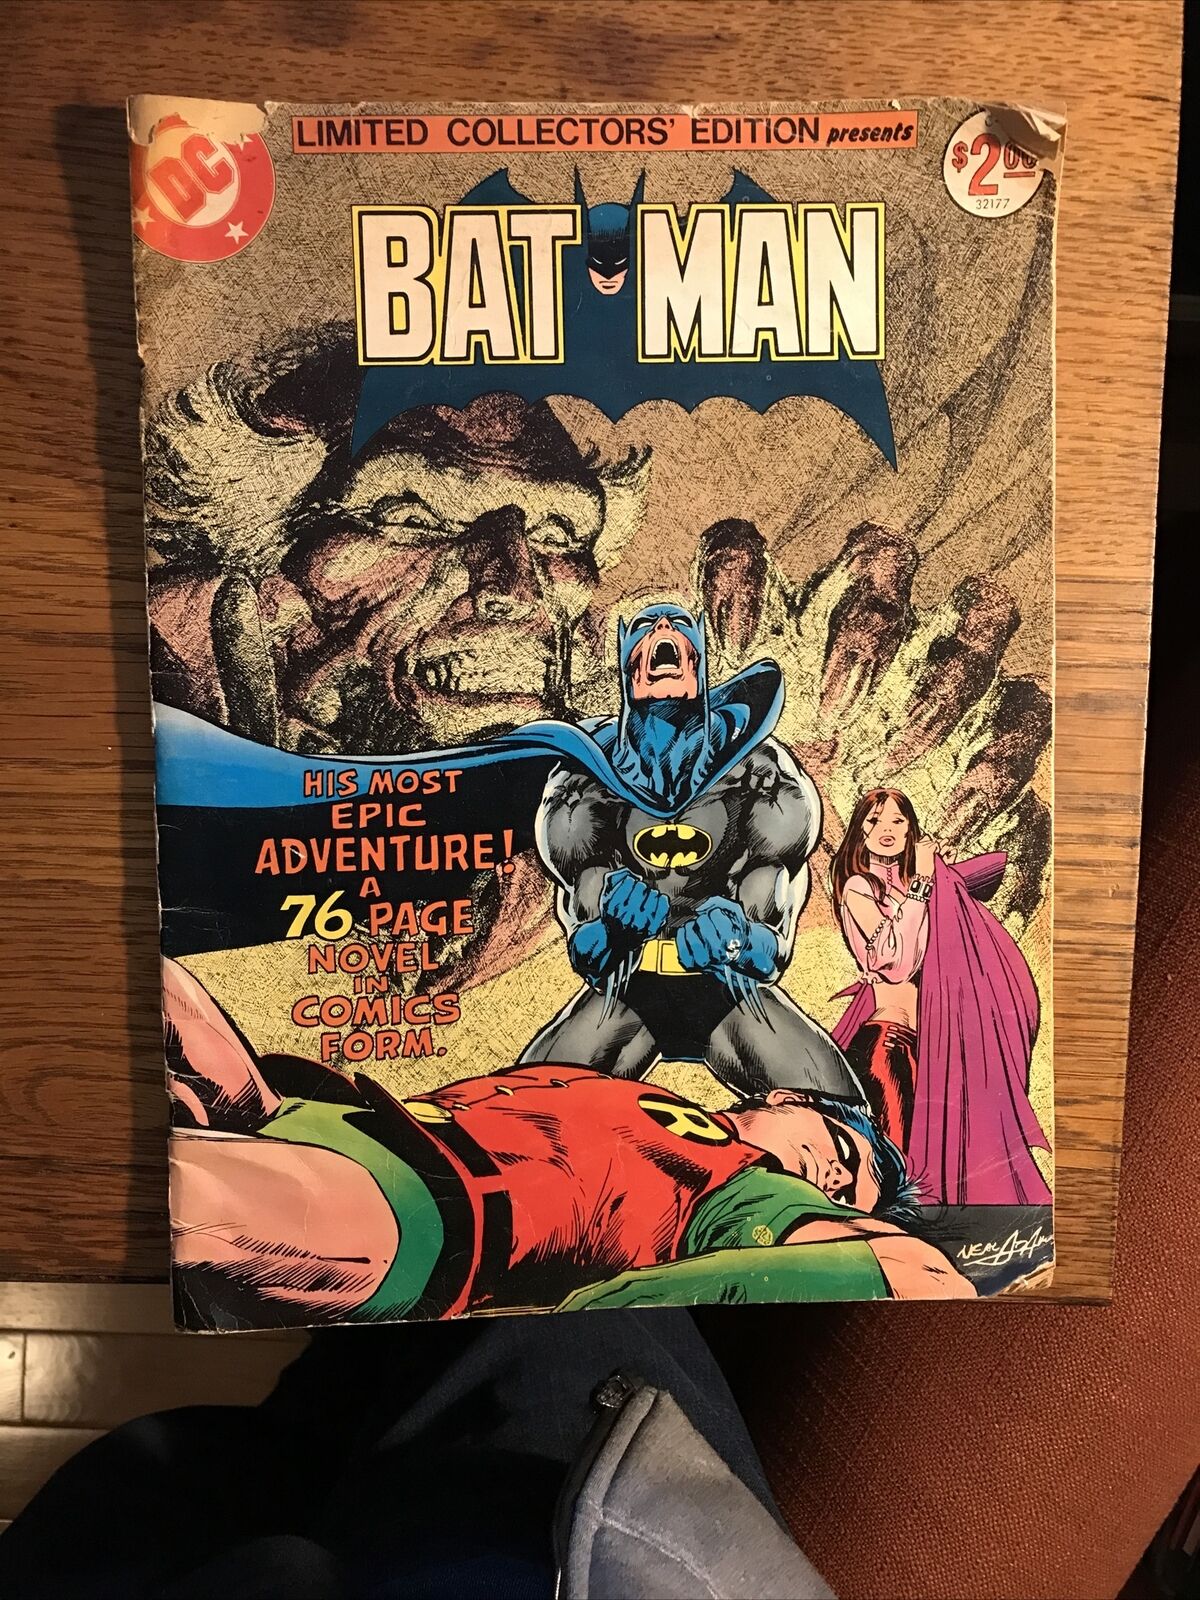 BATMAN Limited Collector's Edition C-51 (1971) Neal Adams Treasury Edition DC